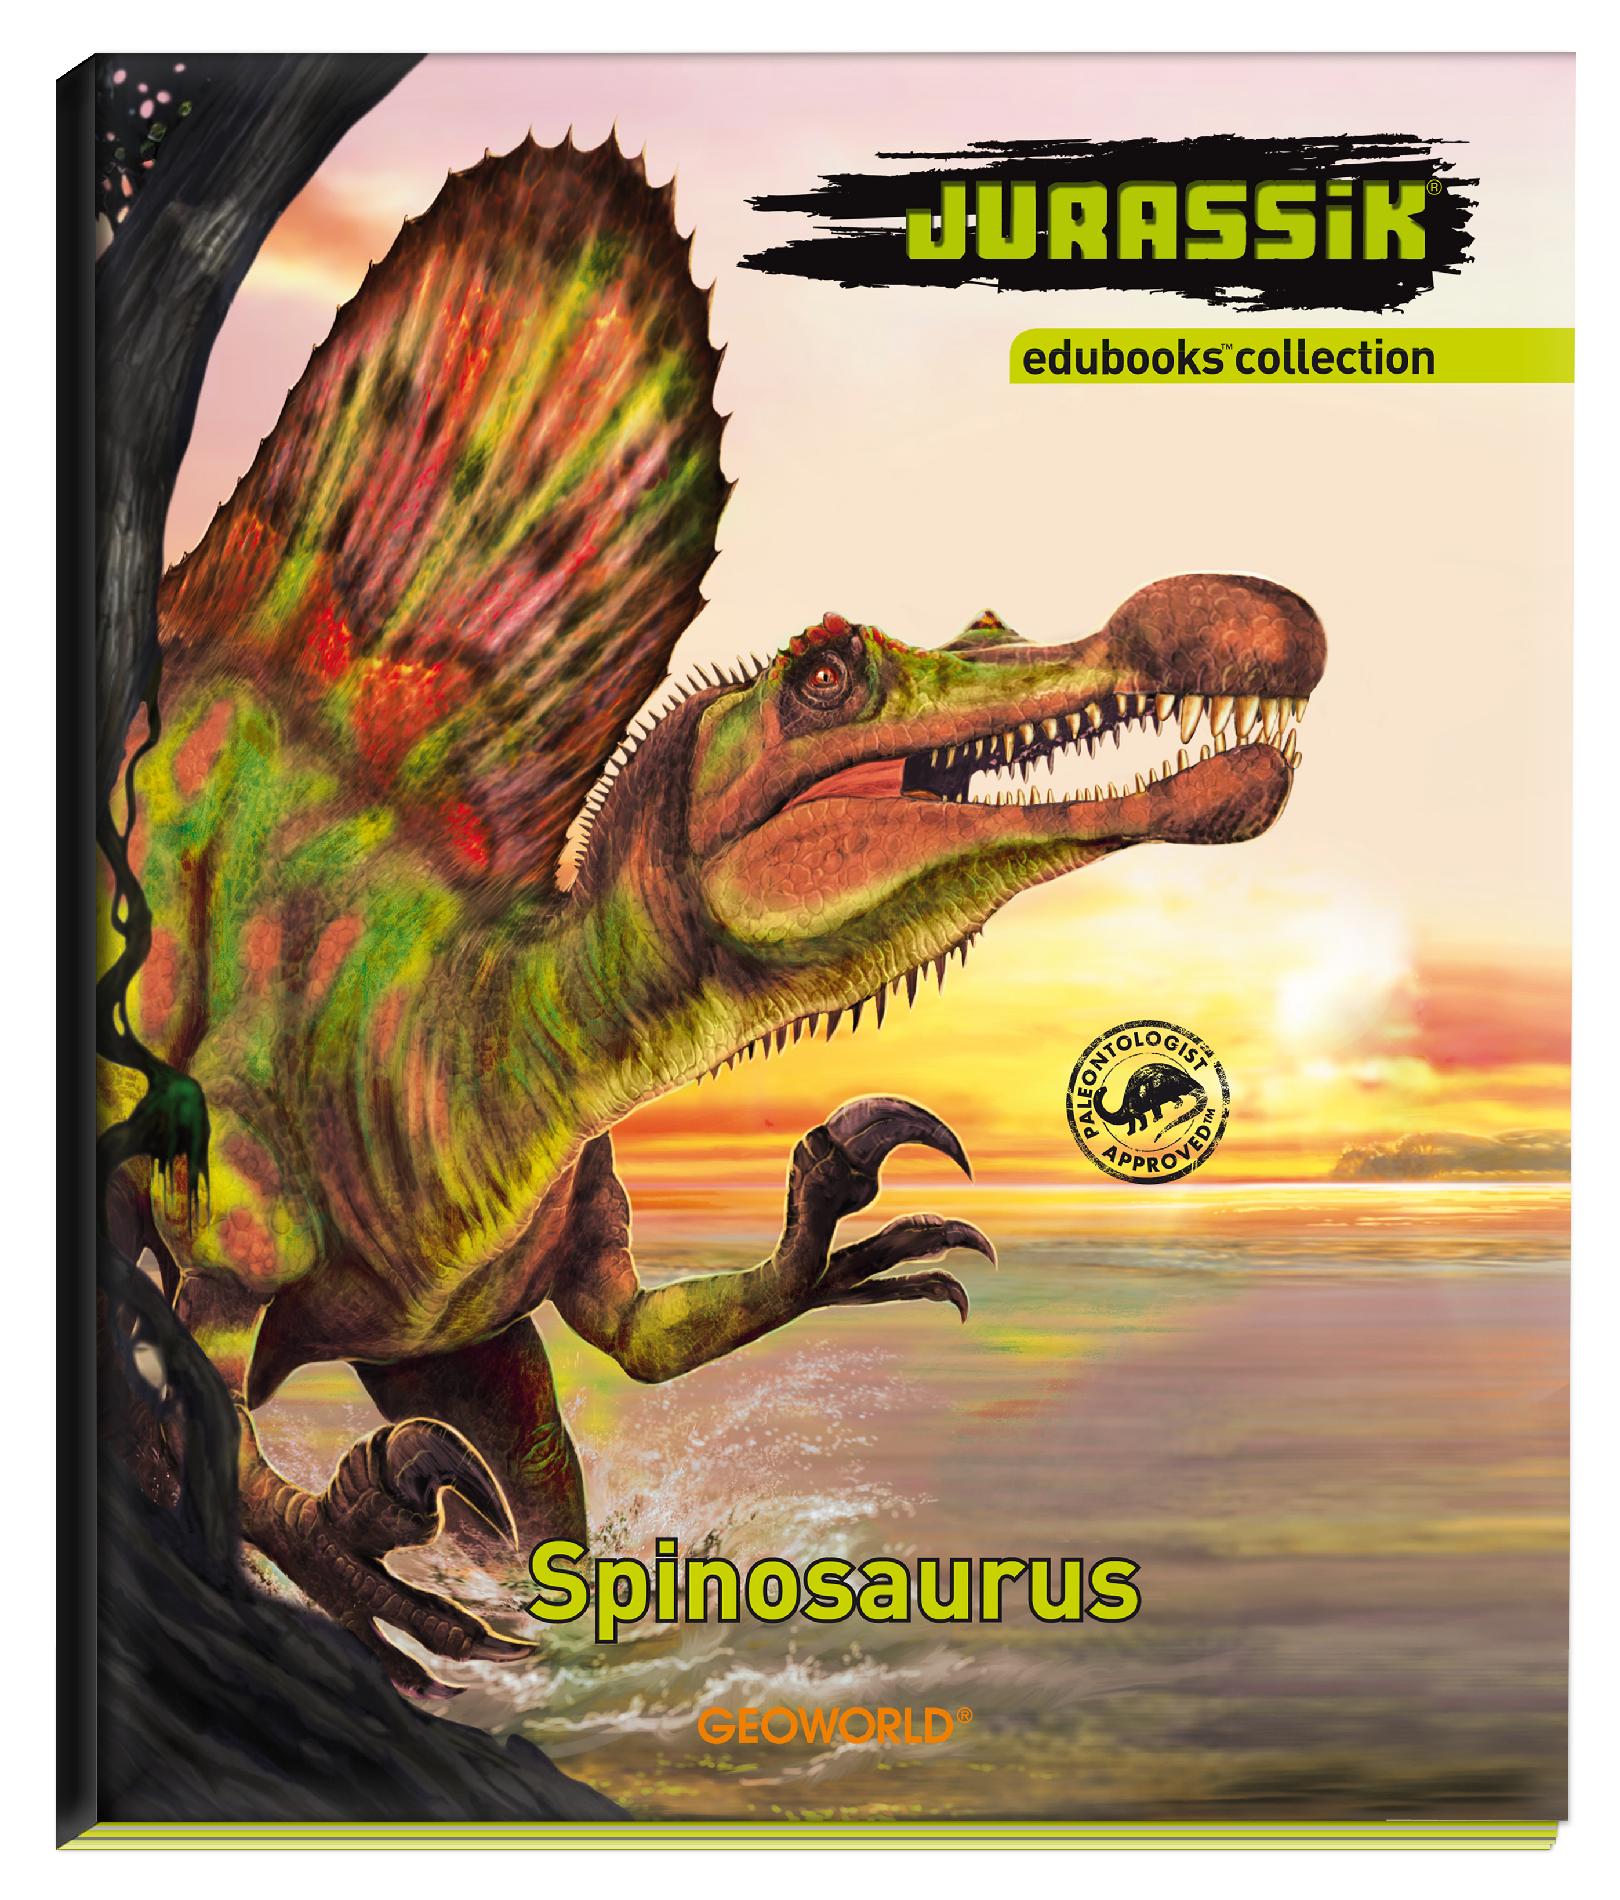 Jurassic Edubooks Spinosaurus